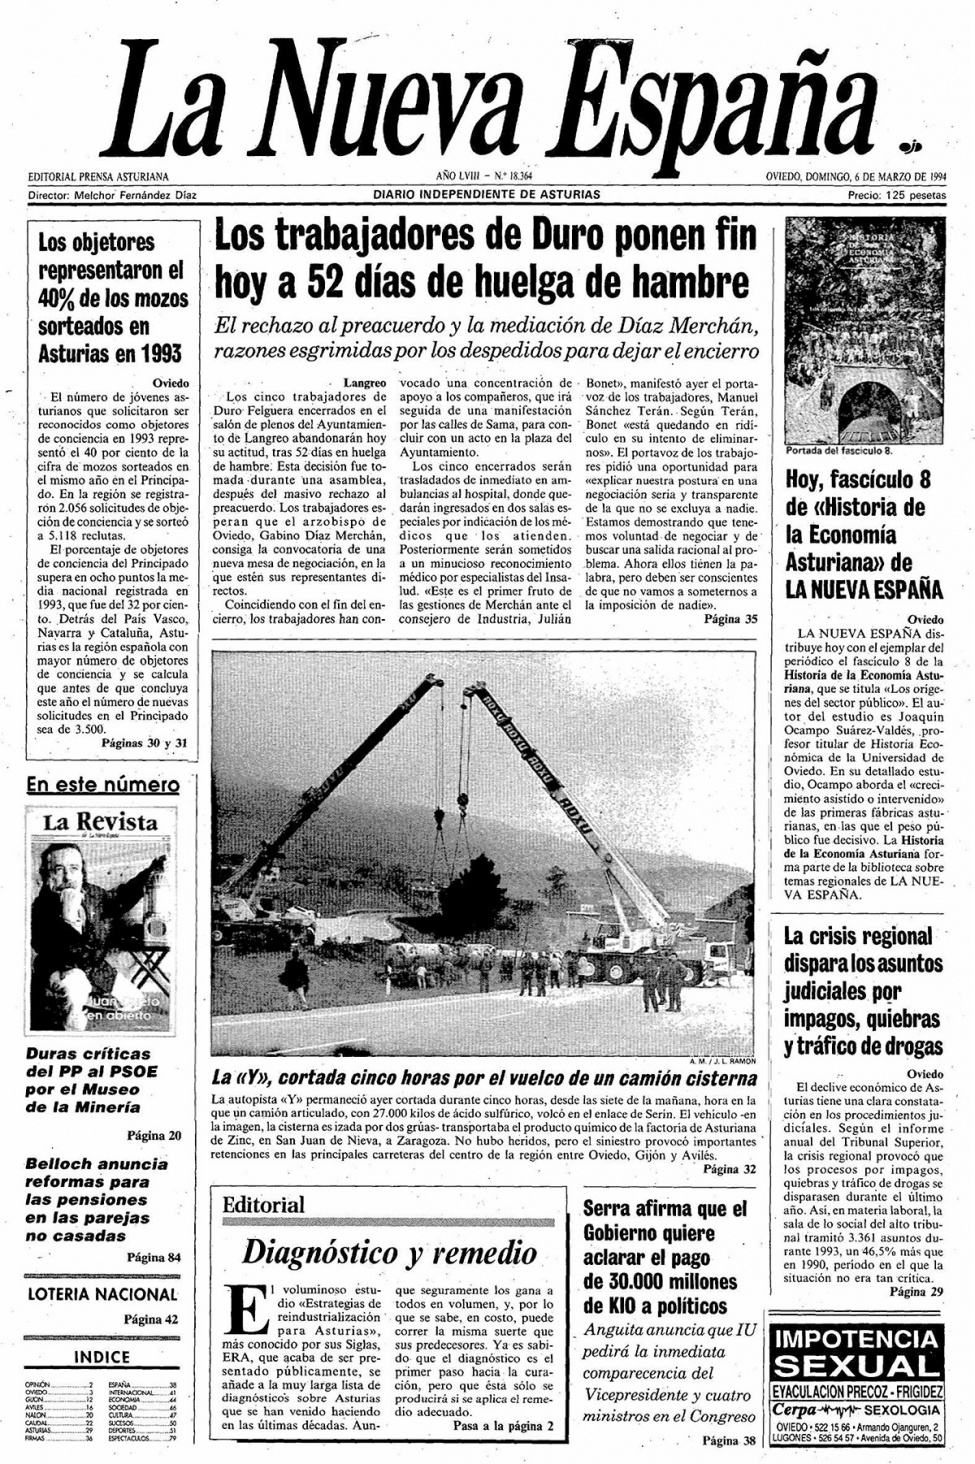 Portada del Domingo, 6 de Marzo de 1994